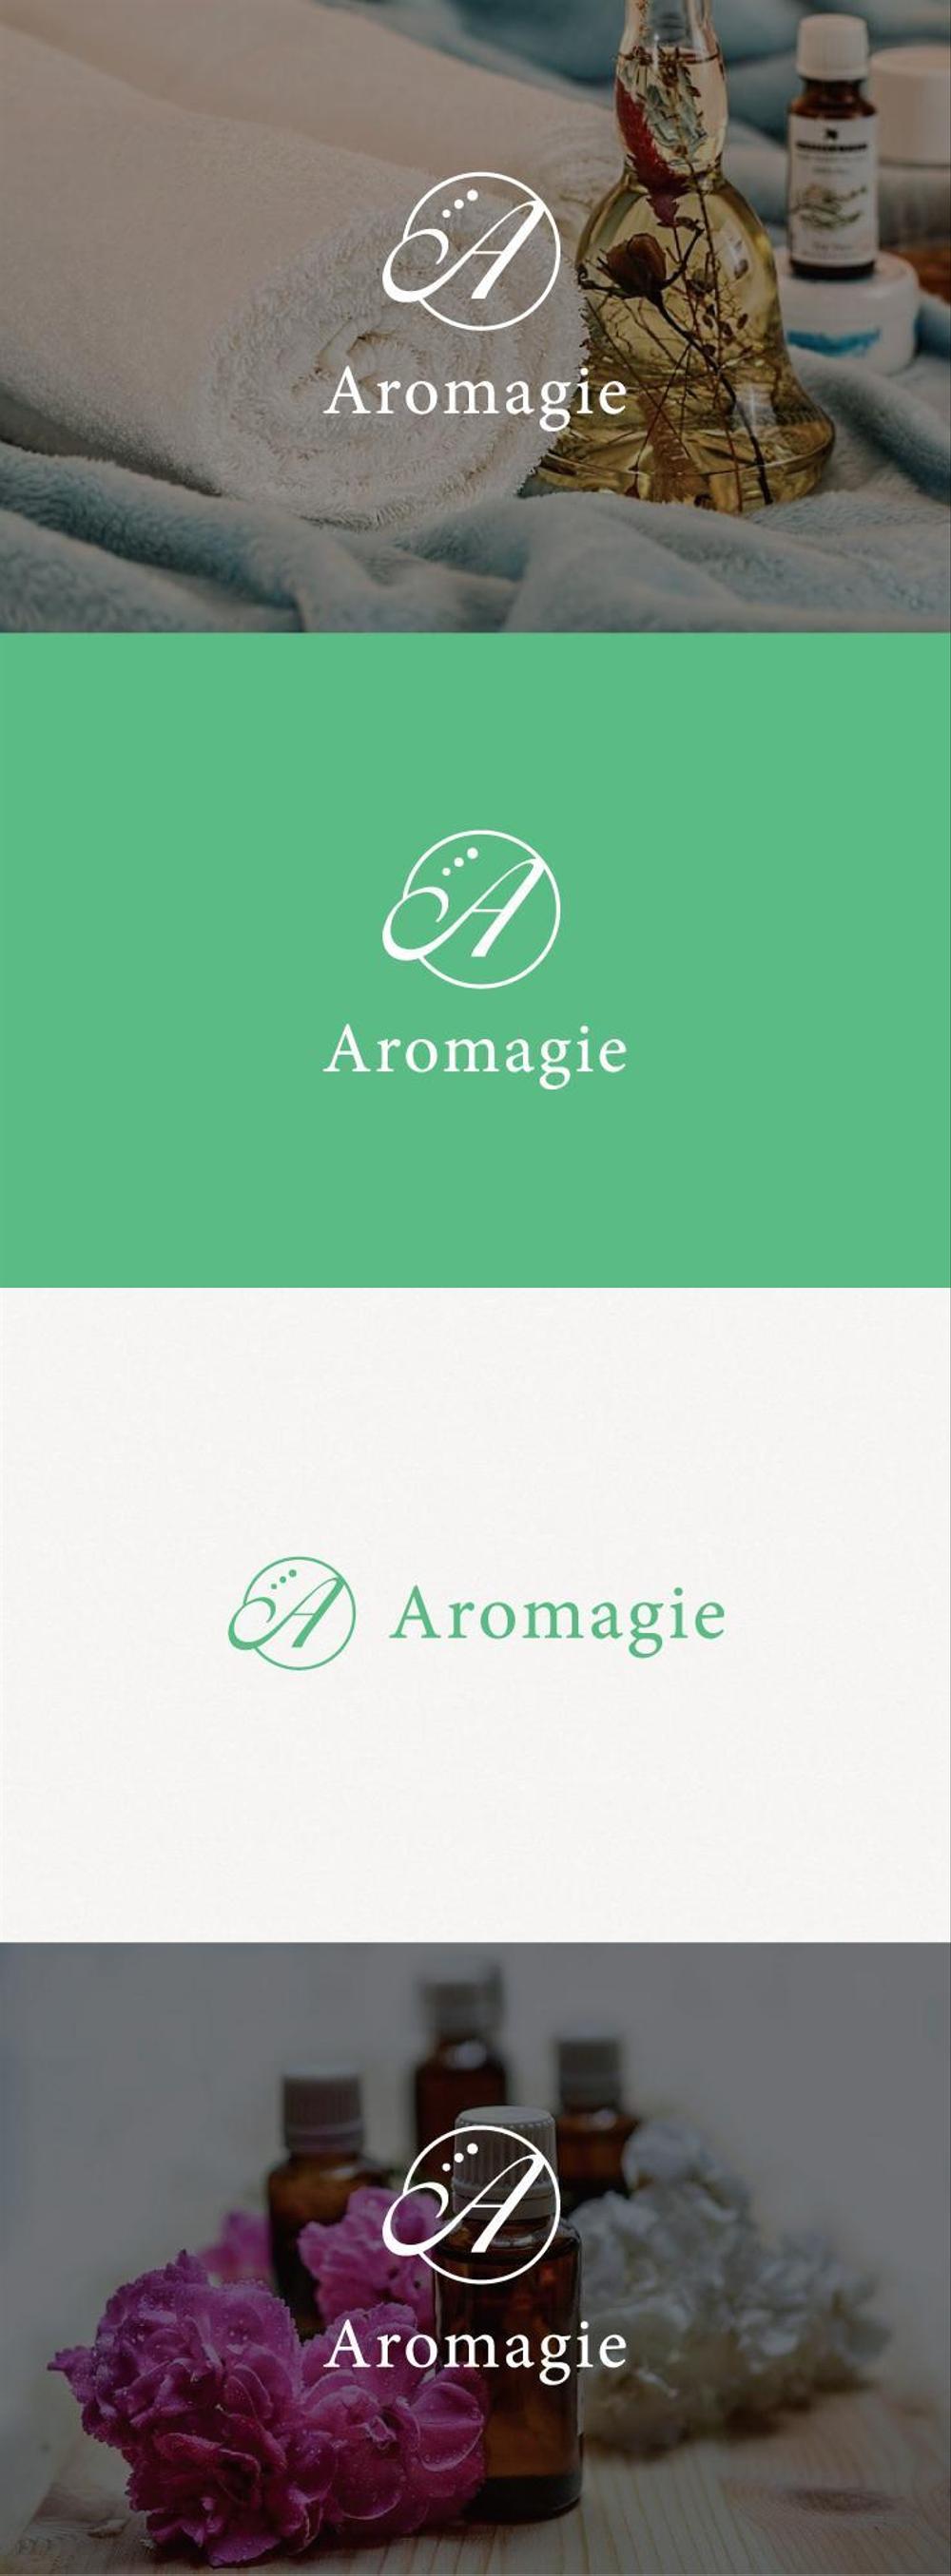 アロマテラピーサロン＆スクール「Aromagie　アロマージェ」のロゴマーク